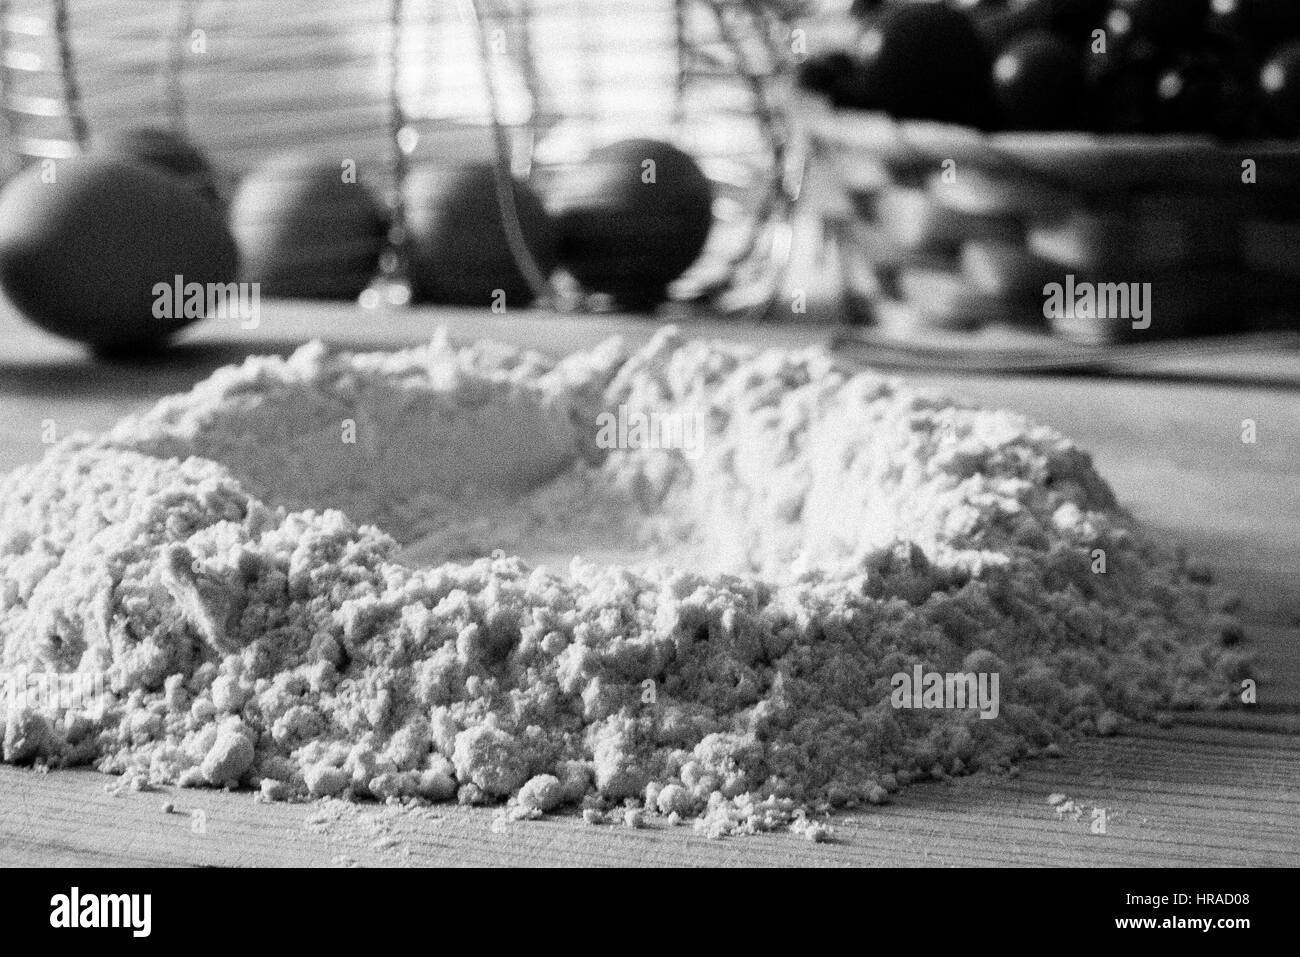 Immagine in bianco e nero della preparazione della pasta in una cucina italiana con farina e uova Foto Stock